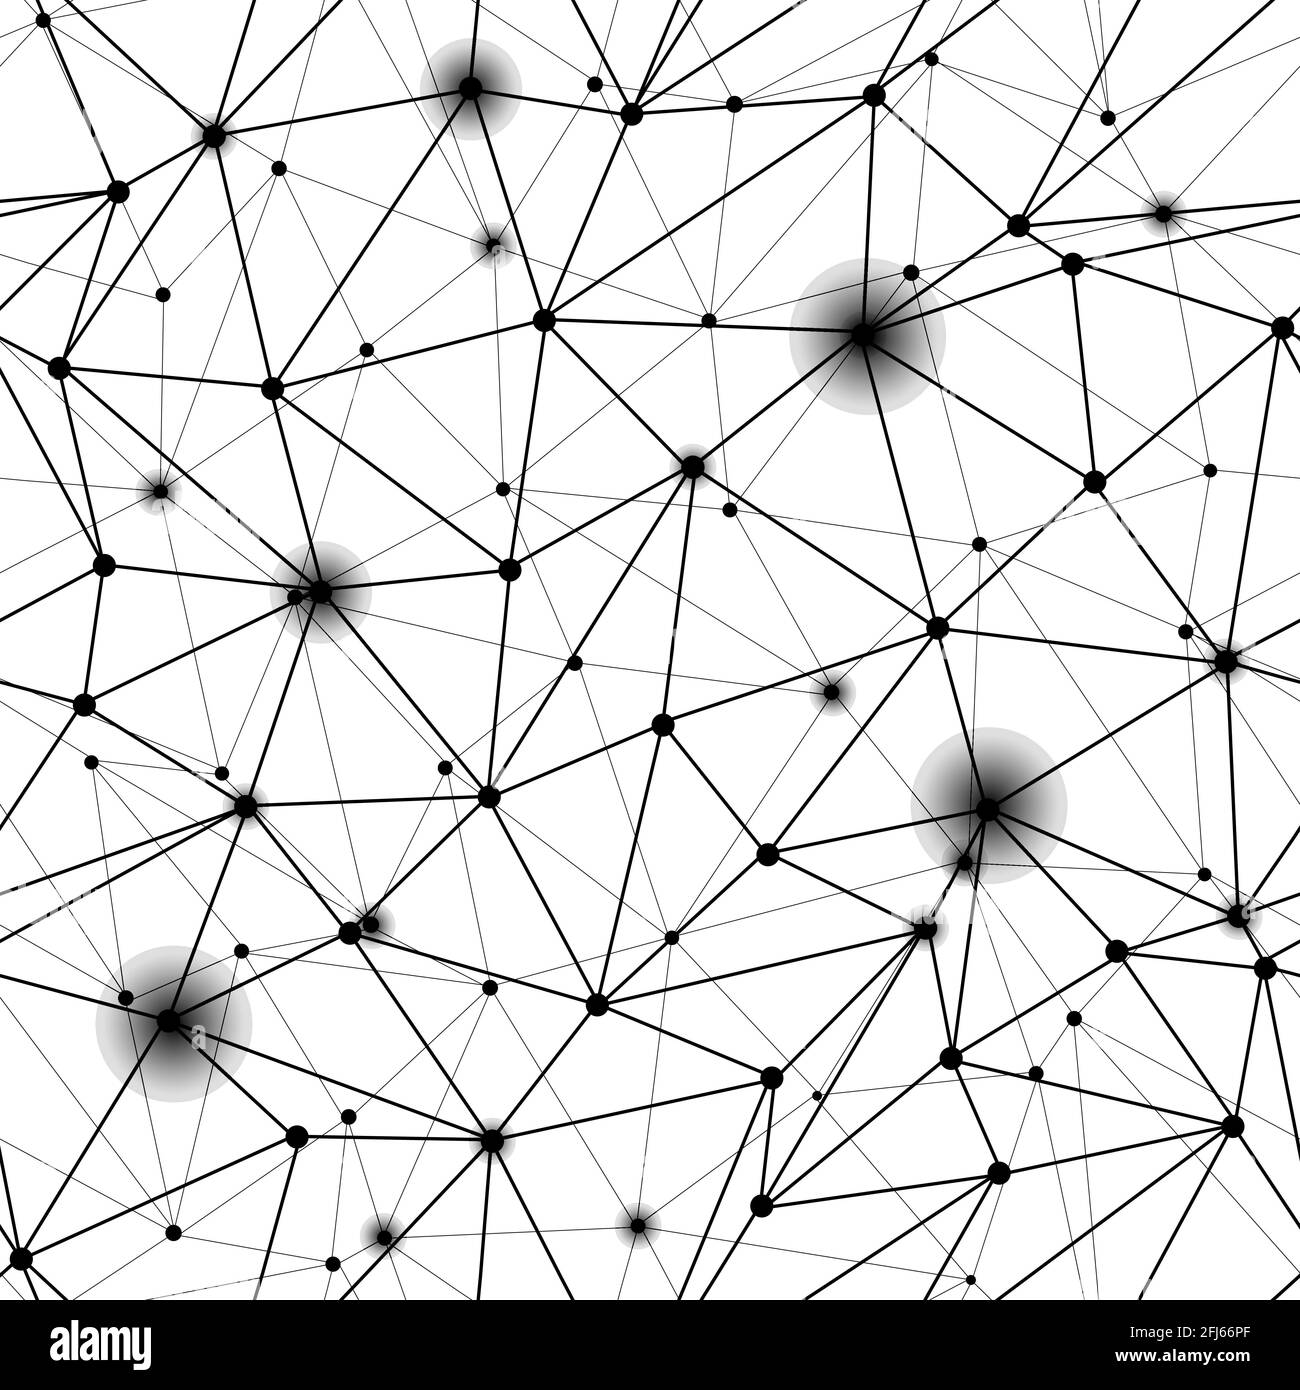 Schwarzes, polygonales Netzraster mit nahtlosem Muster. Dreieckslinien und Kreise verbundene Struktur für Wissenschaft, Technologie, Neural, Cyber, Formel, Netto Stock Vektor